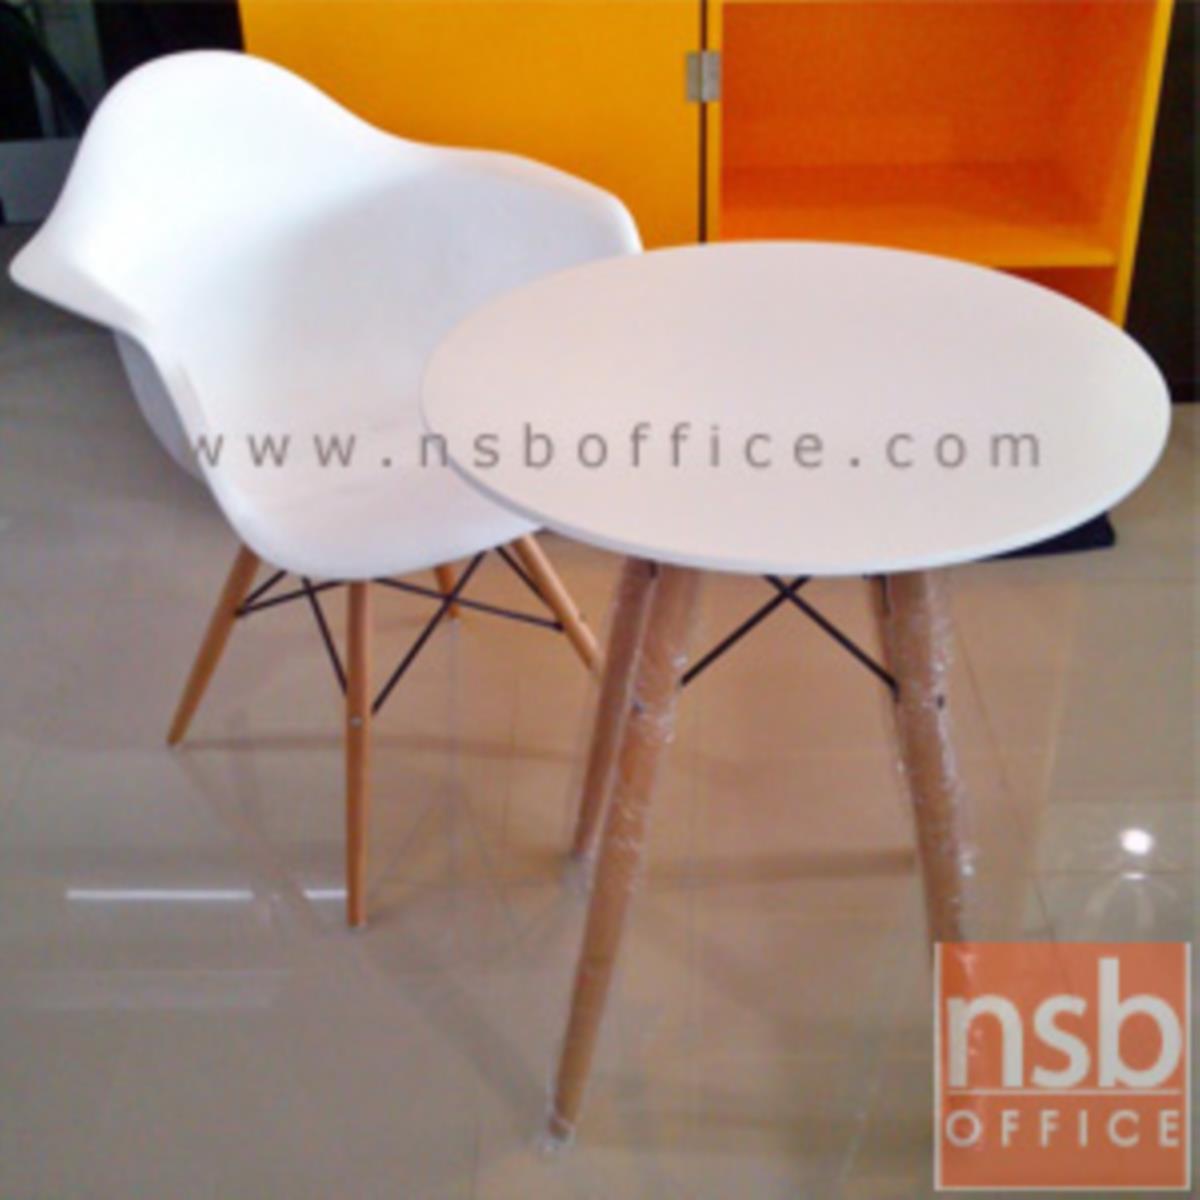 เก้าอี้โมเดิร์นโพลี่ รุ่น Nazario (นาซารีโอ) ขนาด 62W cm. โครงเหล็กเส้นพ่นดำ ขาไม้สีบีช